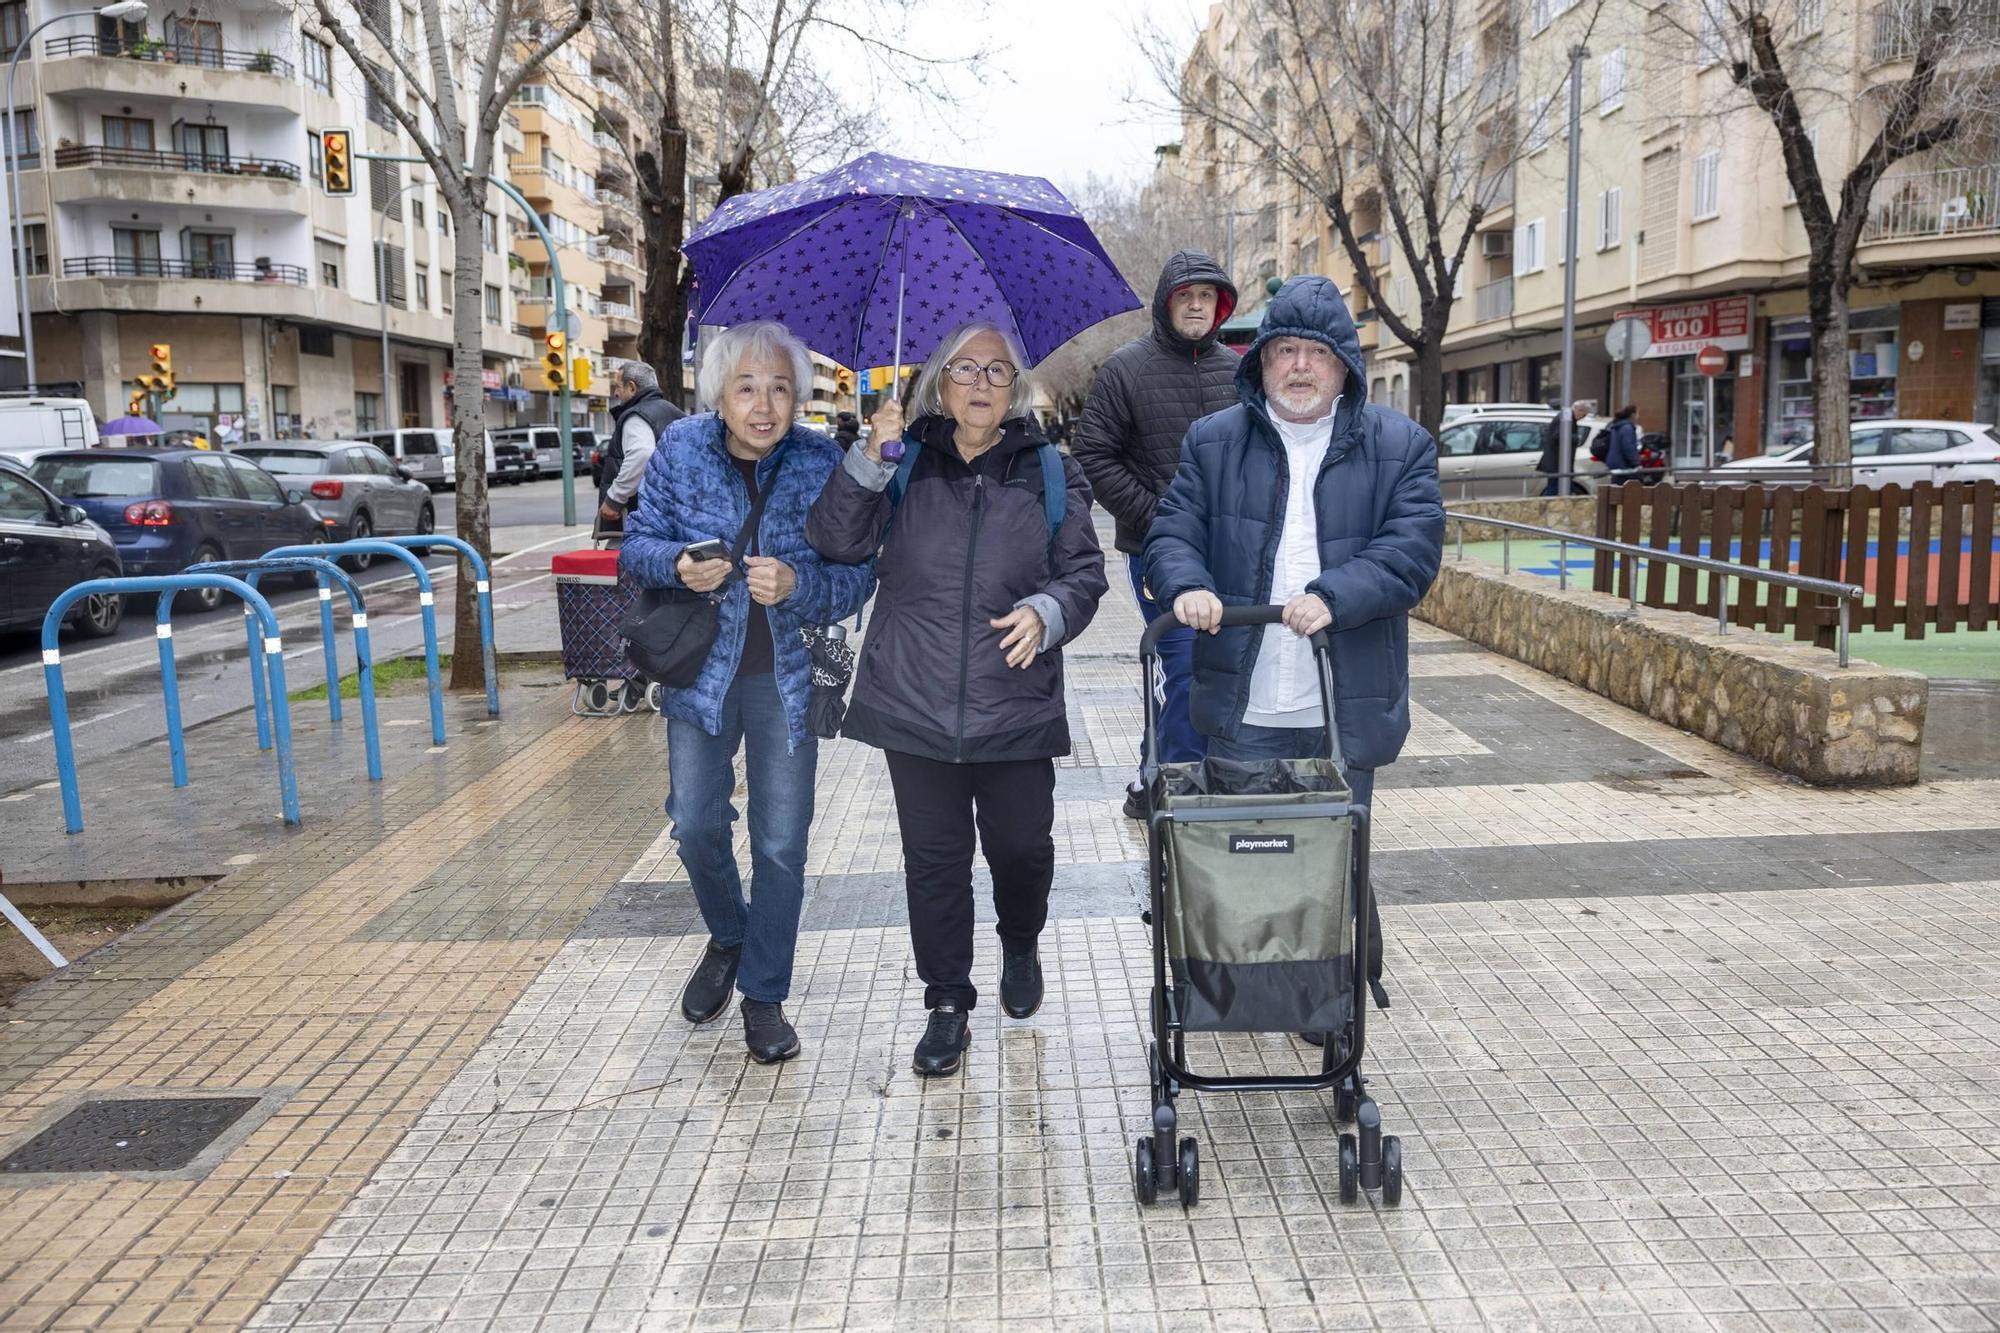 Lucía, Margarita, Jaun Carlos y Paco, de camino al mercado.